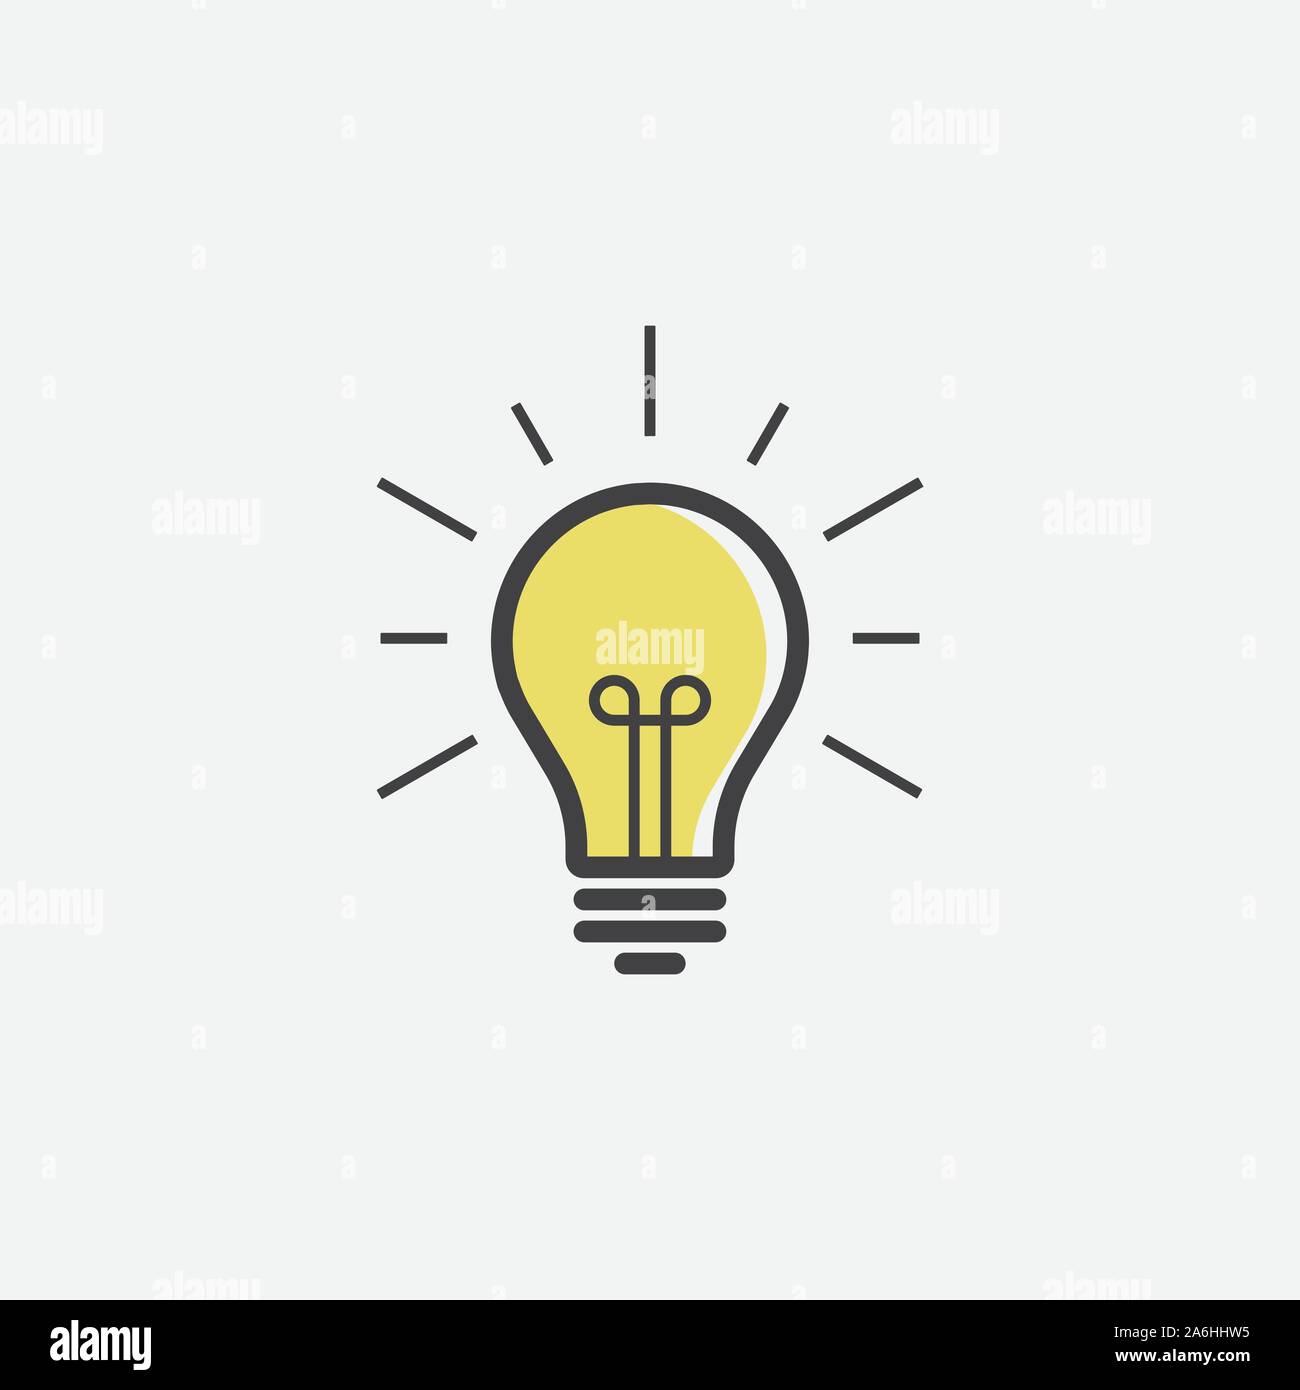 Vektor Bild Lampe. Glühbirne Icon Design, Glühbirne lineare Symbol Vektor,  Idee zeichen Symbol Symbol, Lösung, denken Konzept Design, Beleuchtung  Elektrische Lampe, Elektrizität, Glanz, trendige Flat Style Abbildung  Stock-Vektorgrafik - Alamy